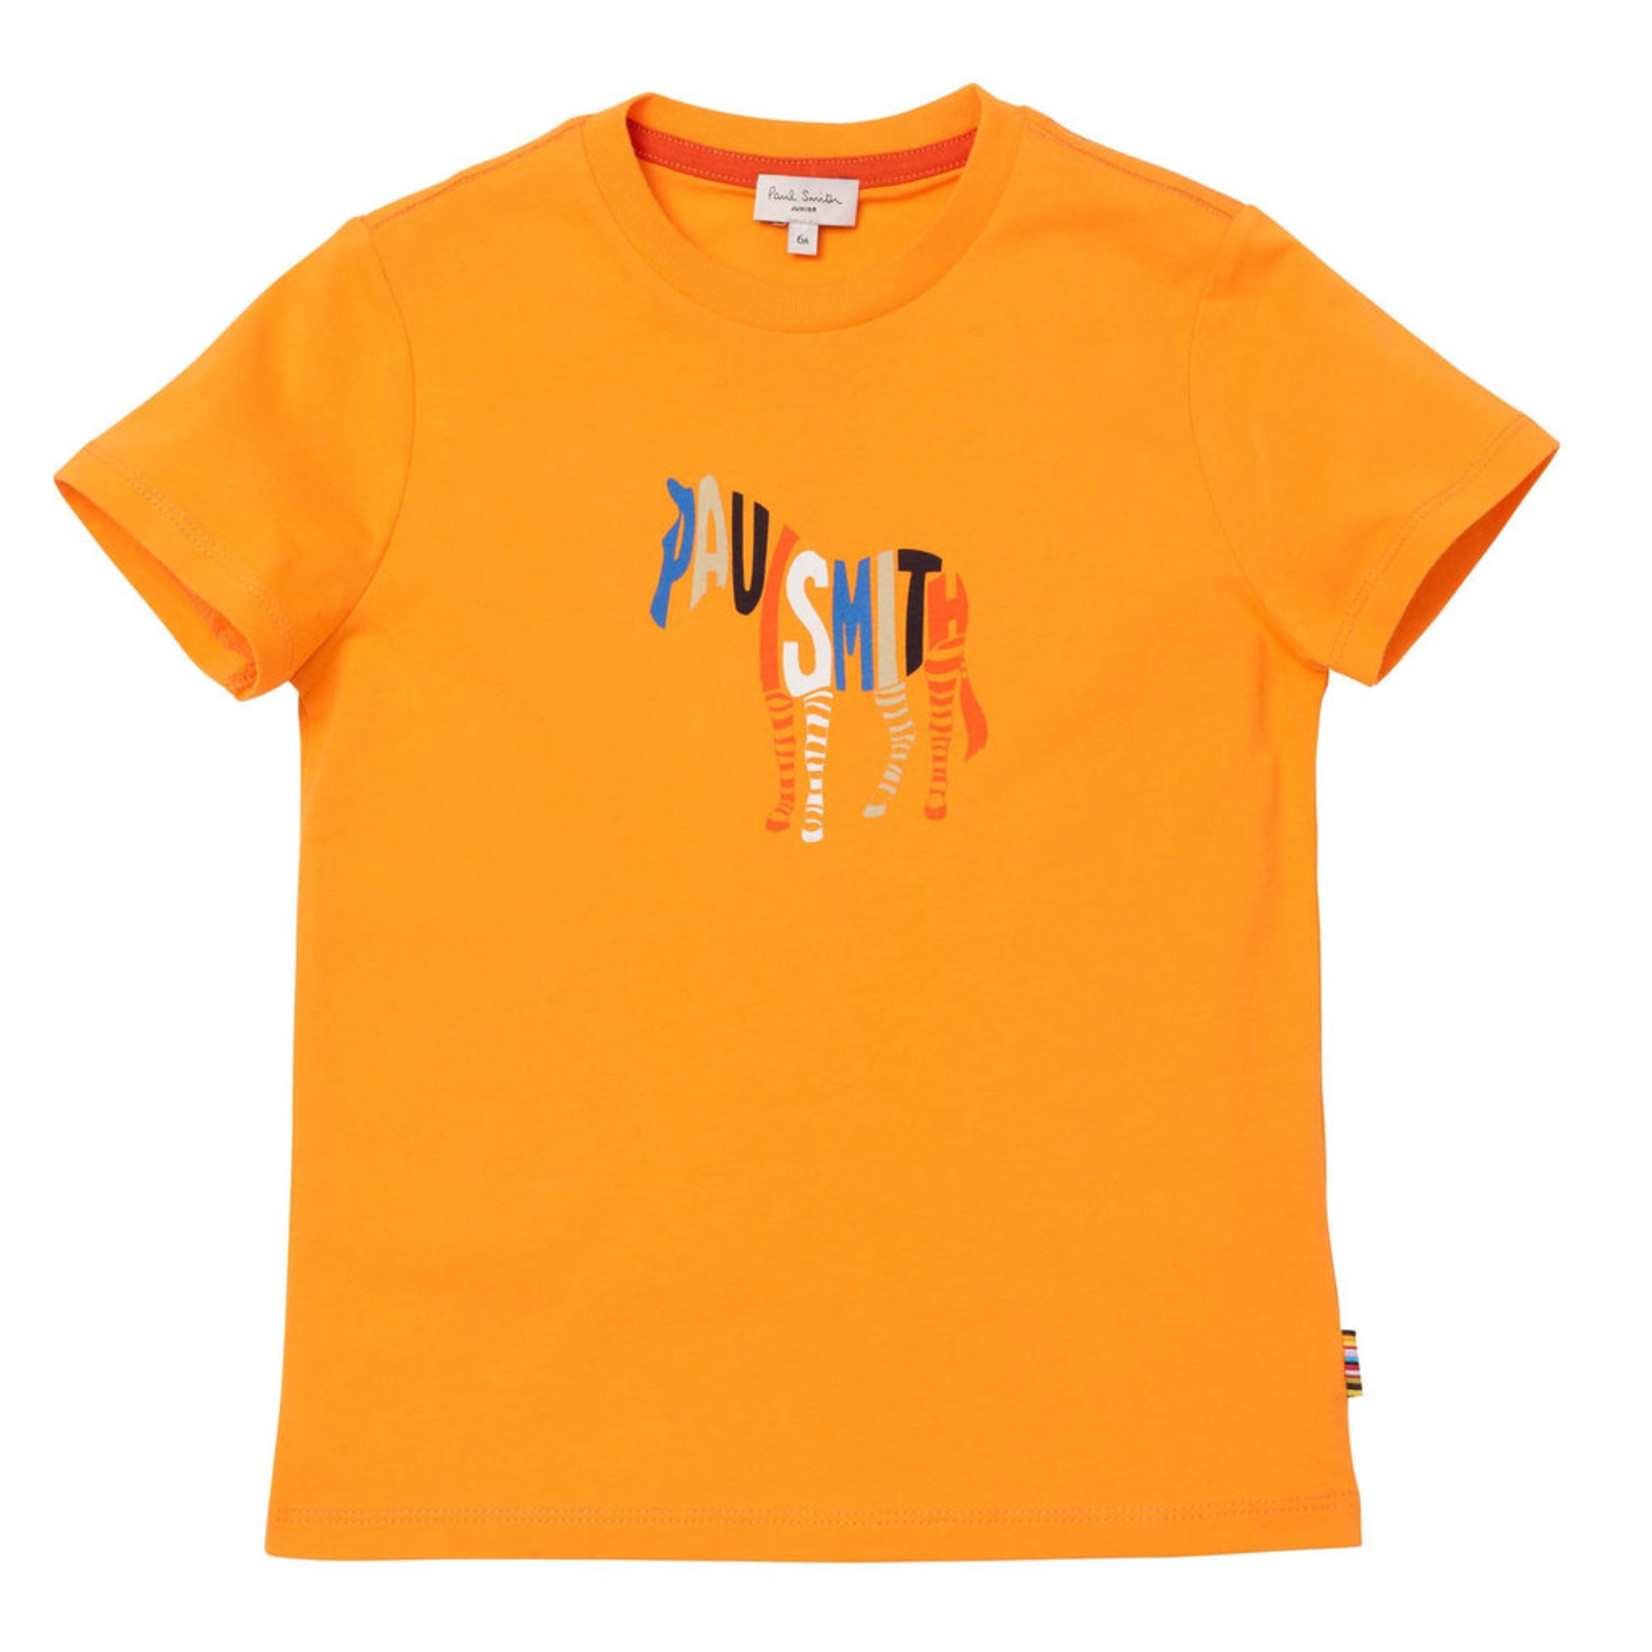 Paul Smith Paul Smith - Boys Orange Zebra Print T-shirt